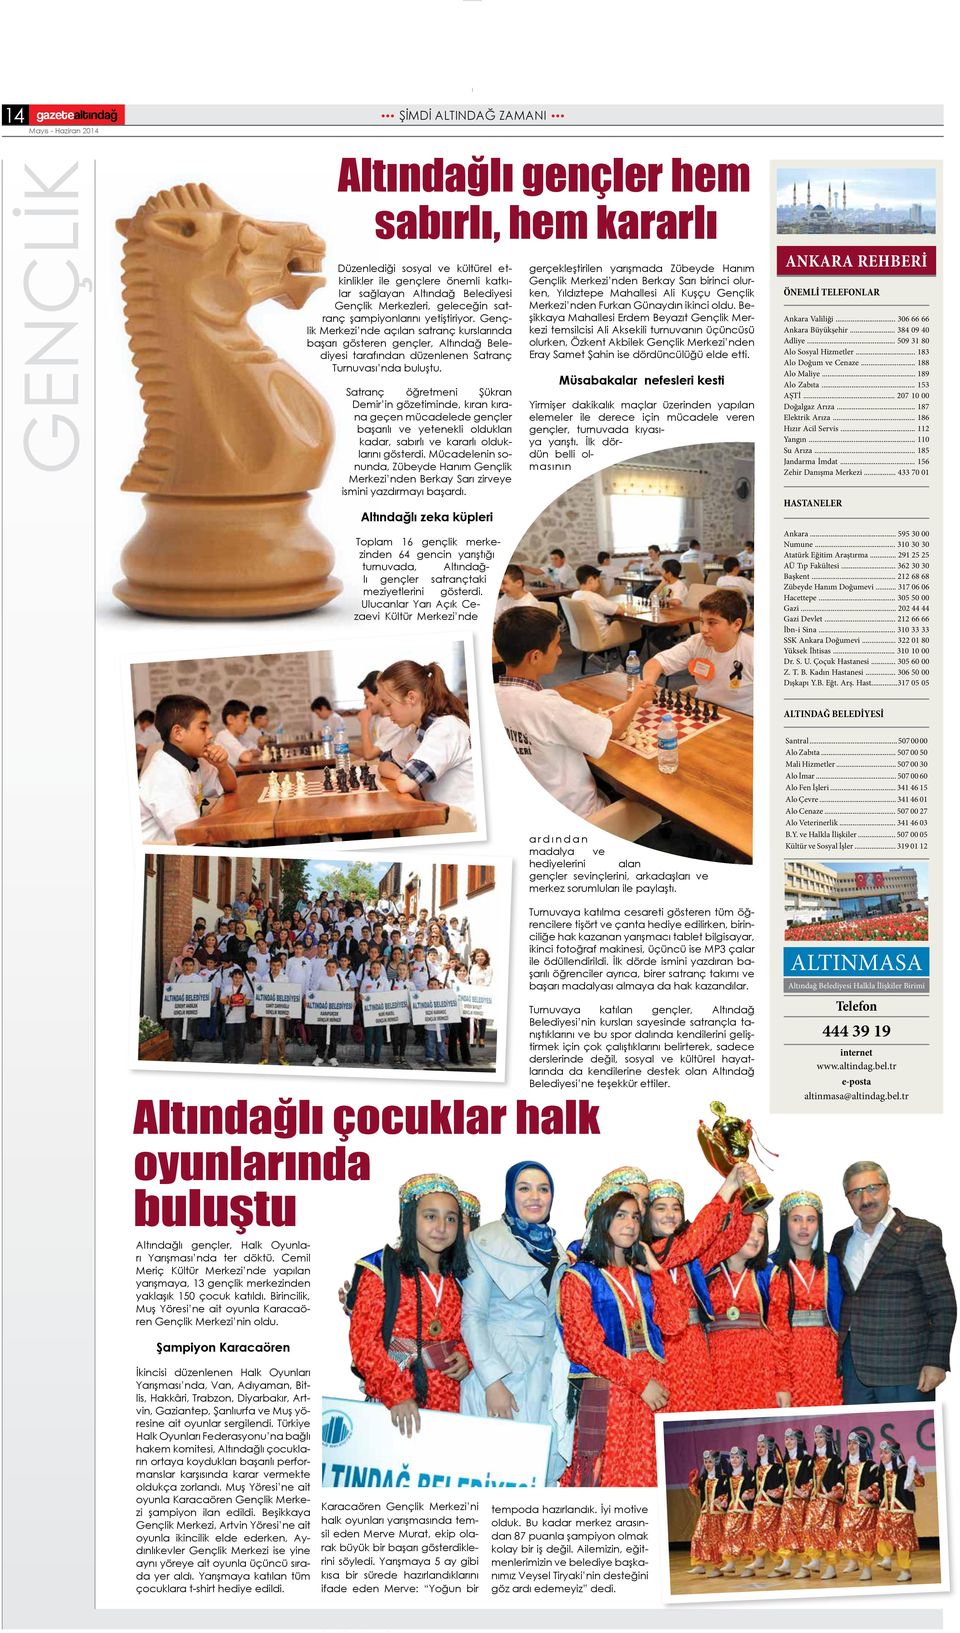 Gençlik Merkezi nde açılan satranç kurslarında başarı gösteren gençler, Altındağ Belediyesi tarafından düzenlenen Satranç Turnuvası nda buluştu.